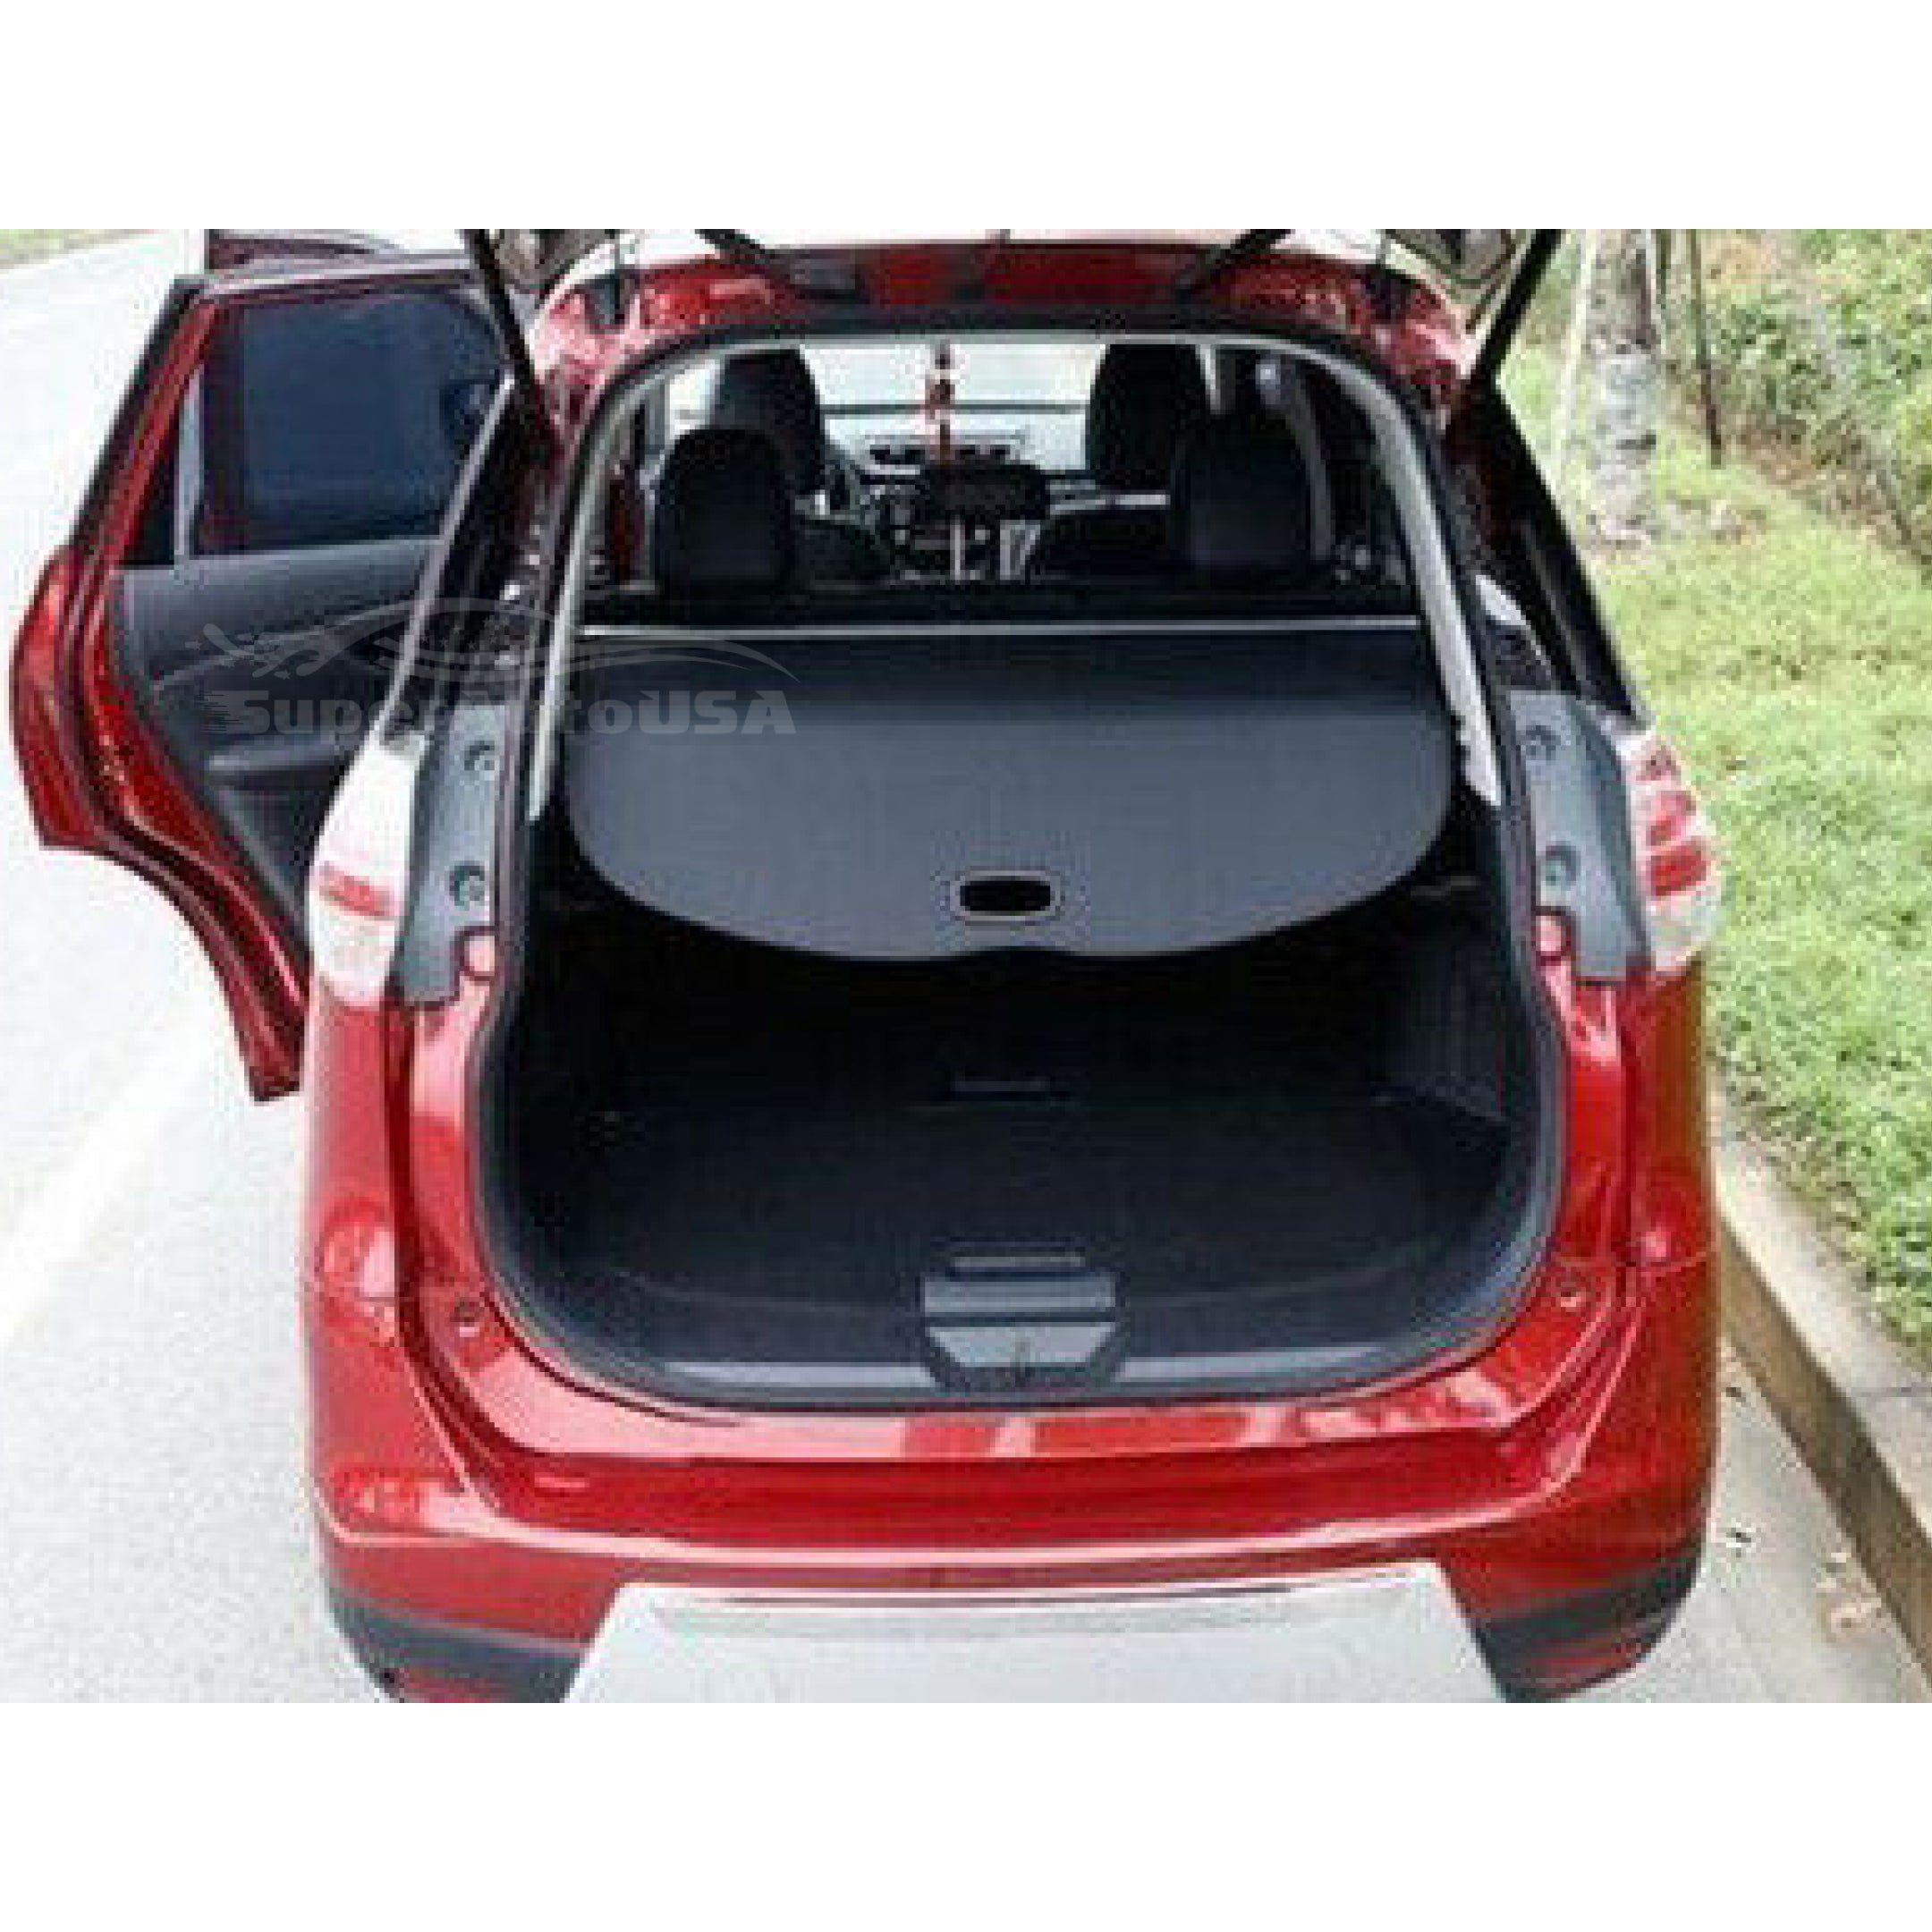 Se adapta a la cubierta de carga Tonneau retráctil del maletero trasero del equipaje Toyota 4Runner 2010-2021 (negro) - 0